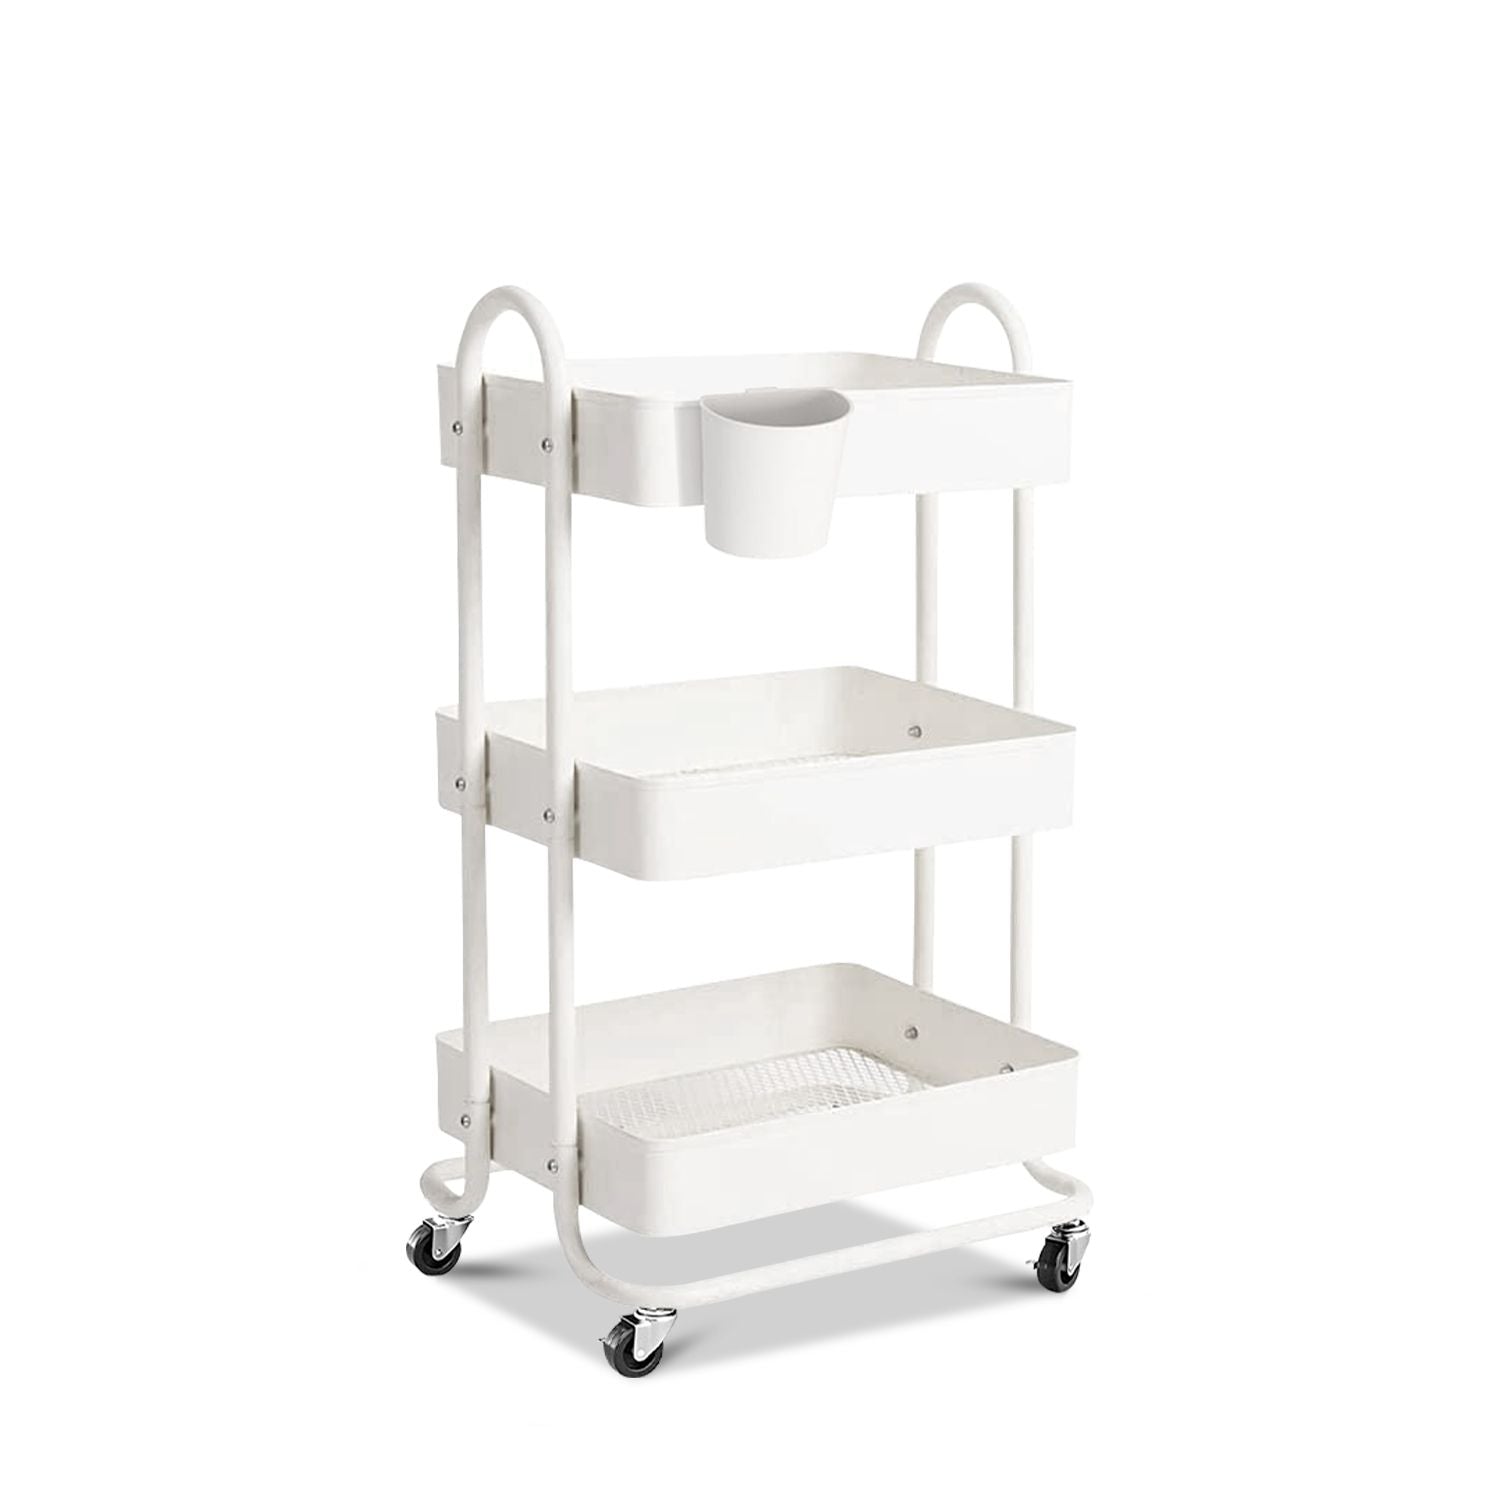 EKKIO Kitchen Trolley Cart 3 Tier (White)